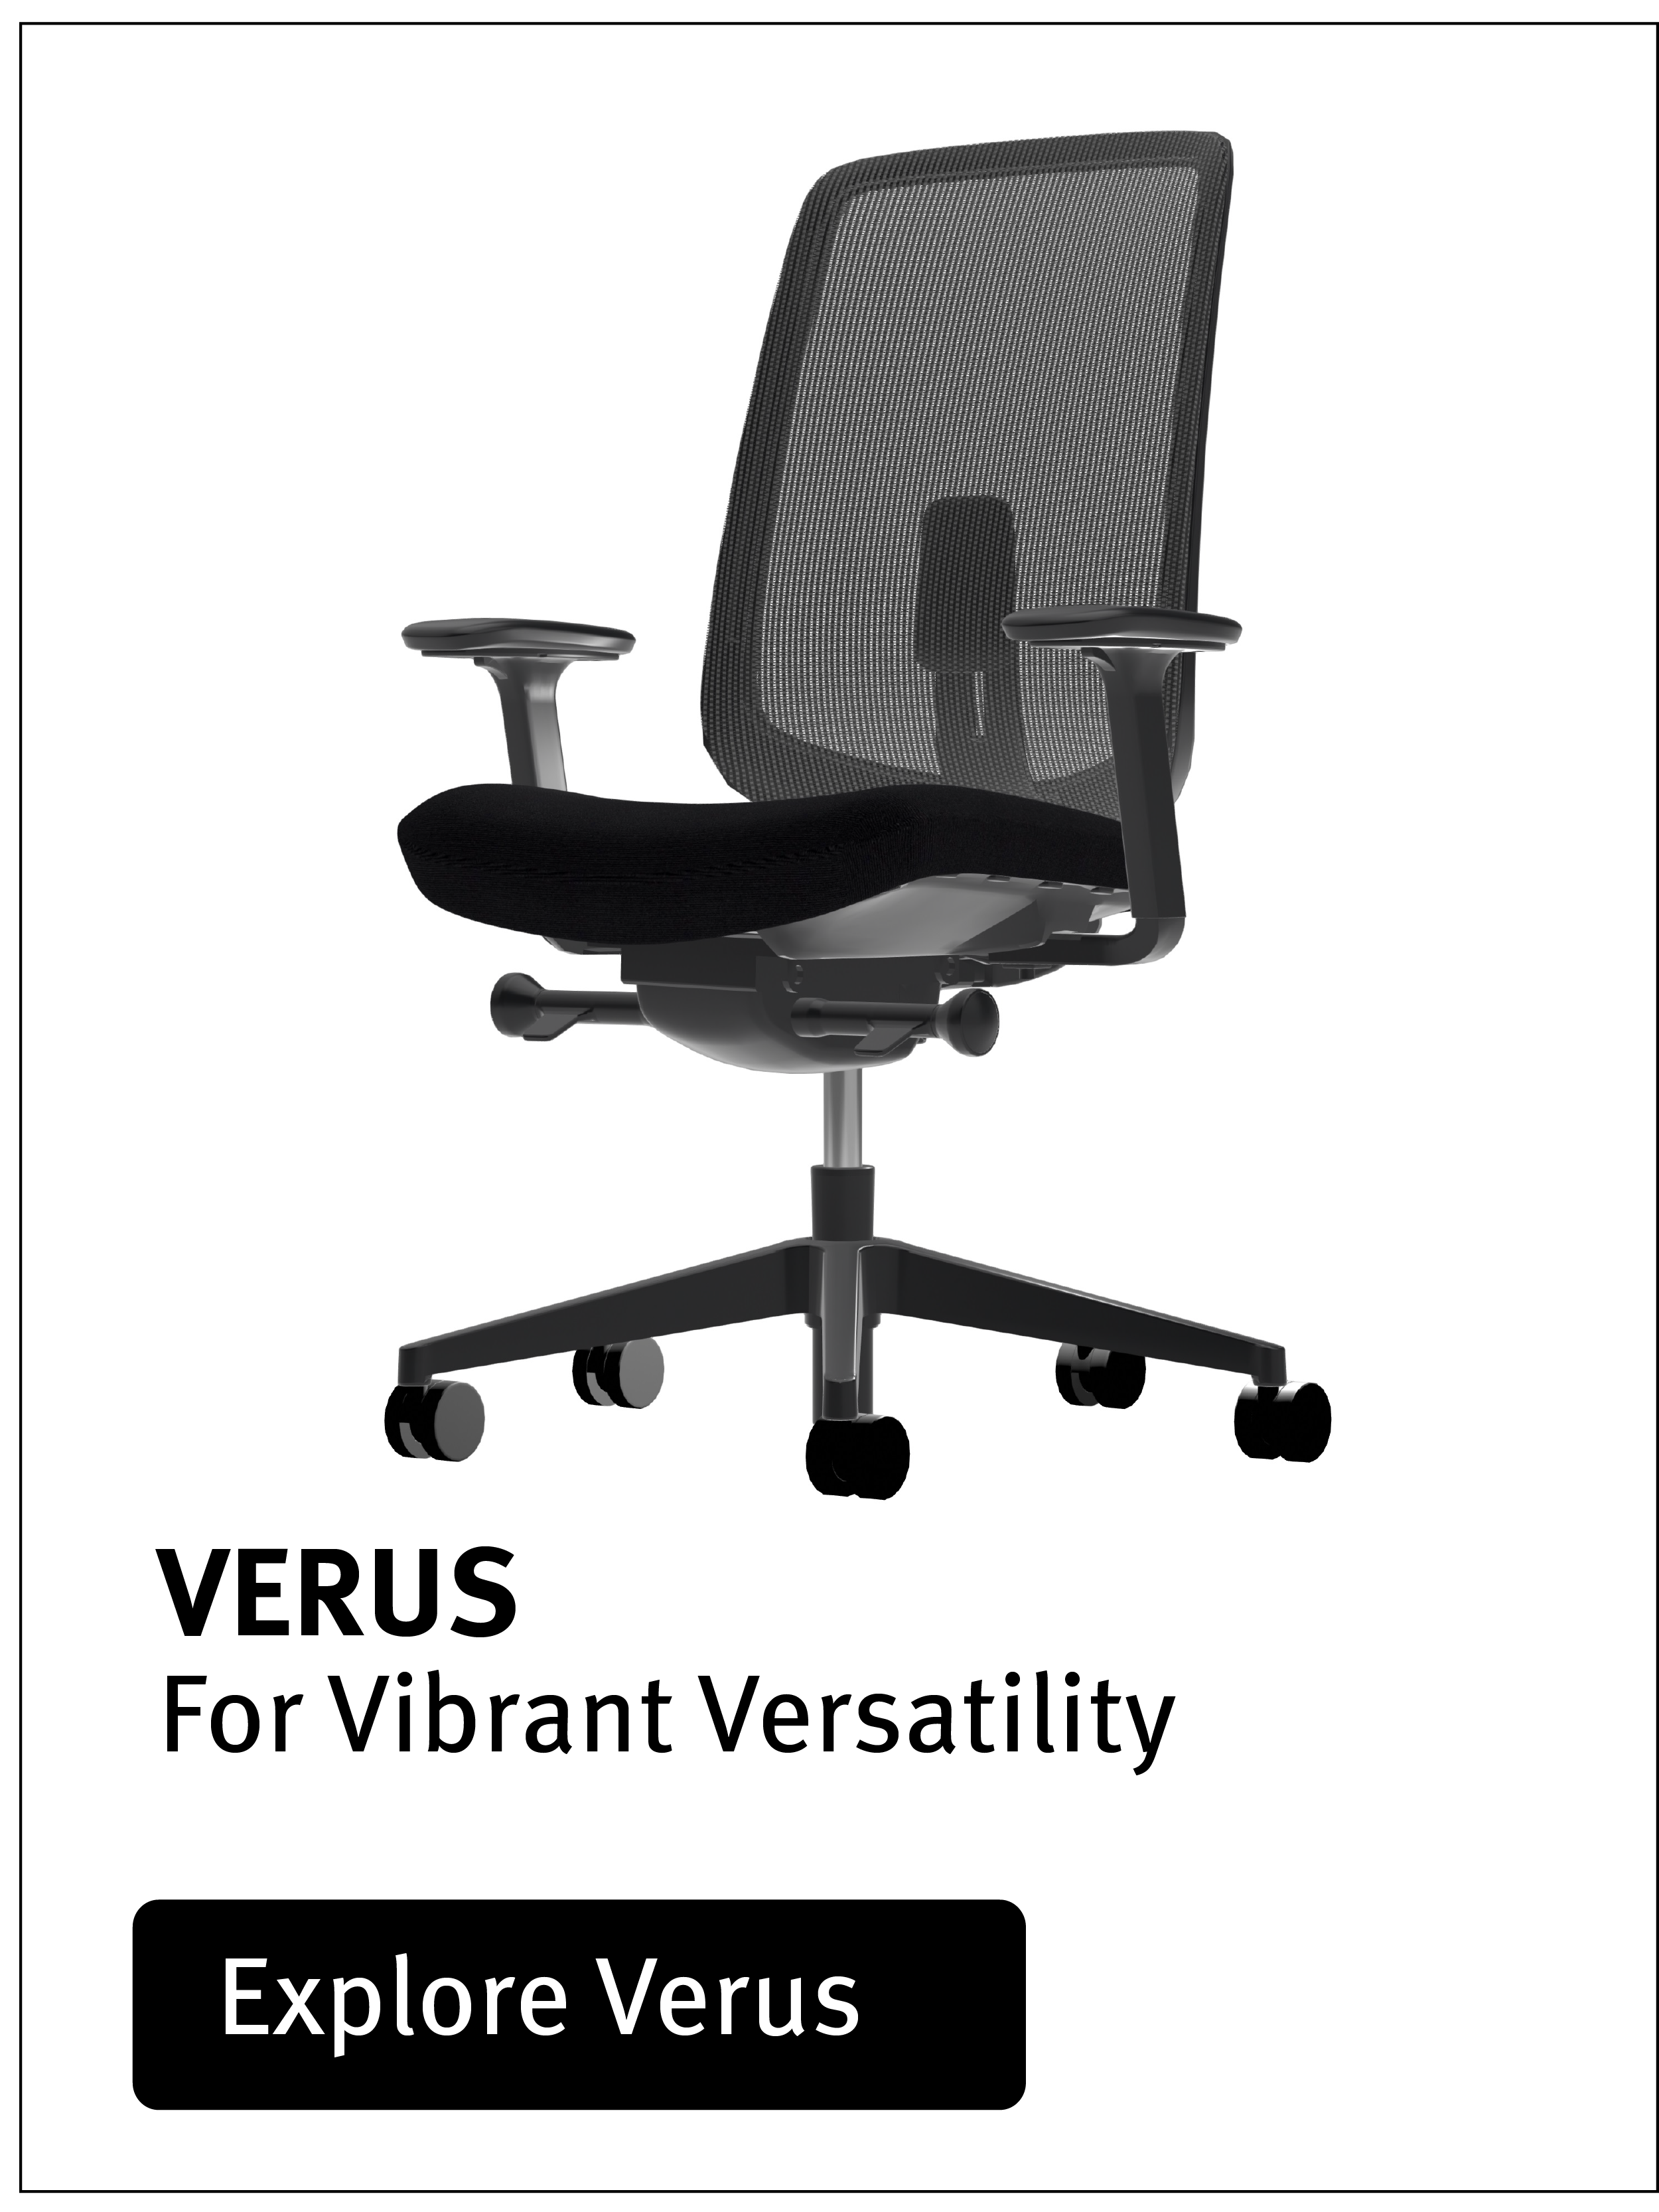 Verus Chair by Herman Miller